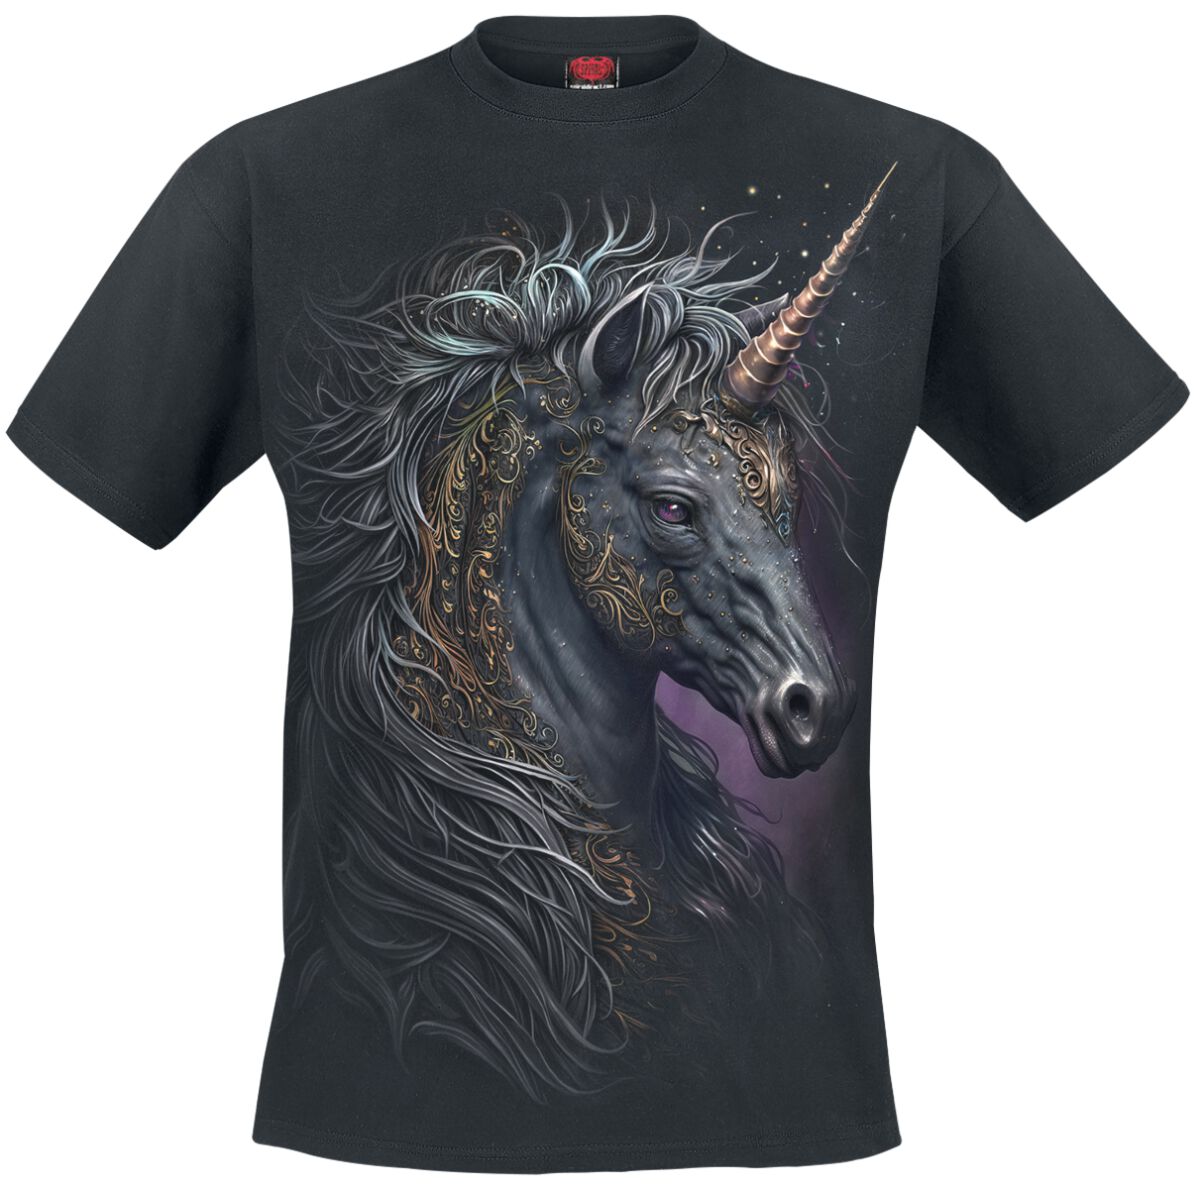 Spiral - Einhorn T-Shirt - Celtic Unicorn - S bis 3XL - für Männer - Größe S - schwarz